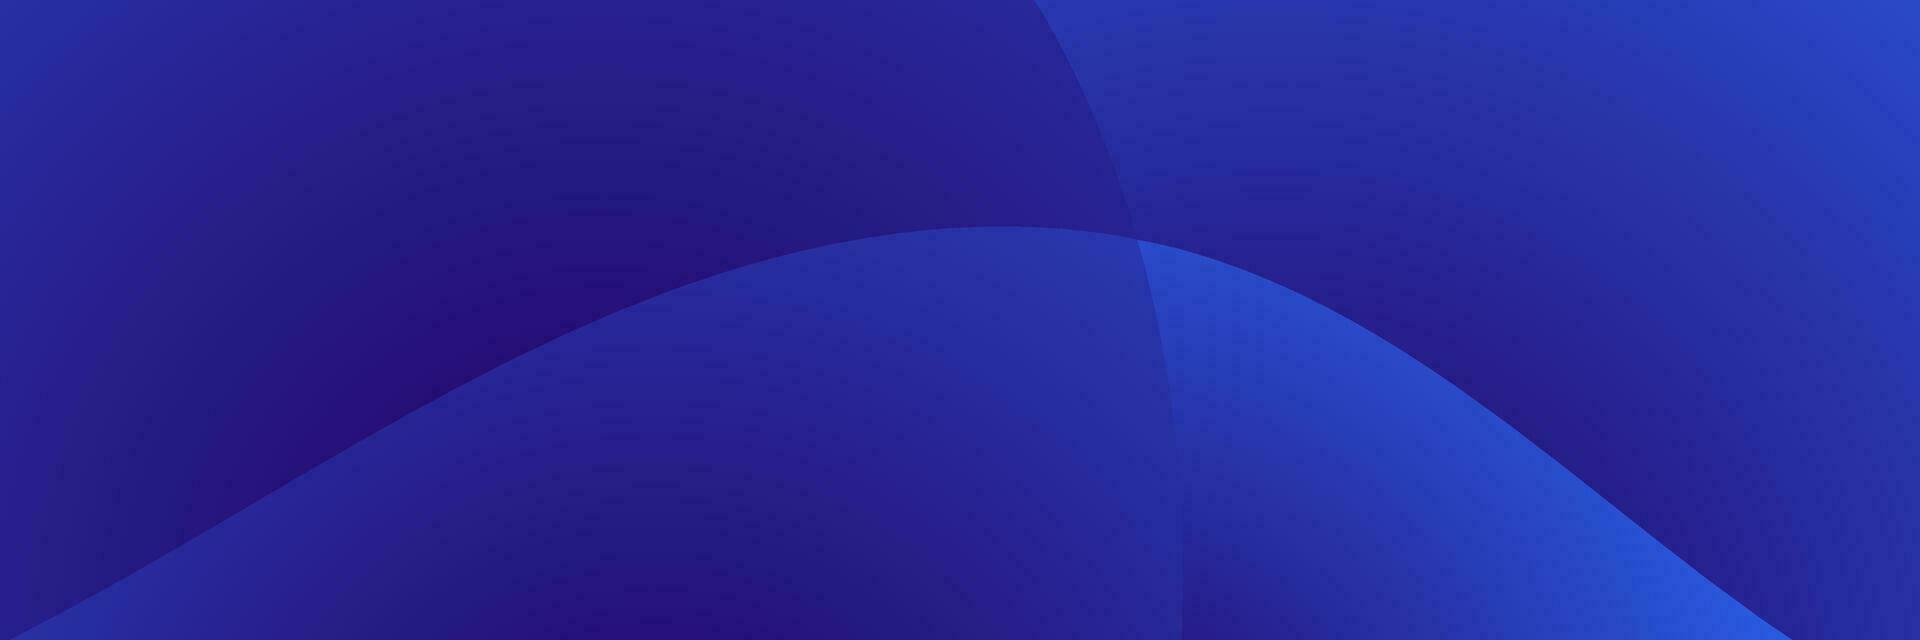 Blau Gradient Welle Hintergrund vektor